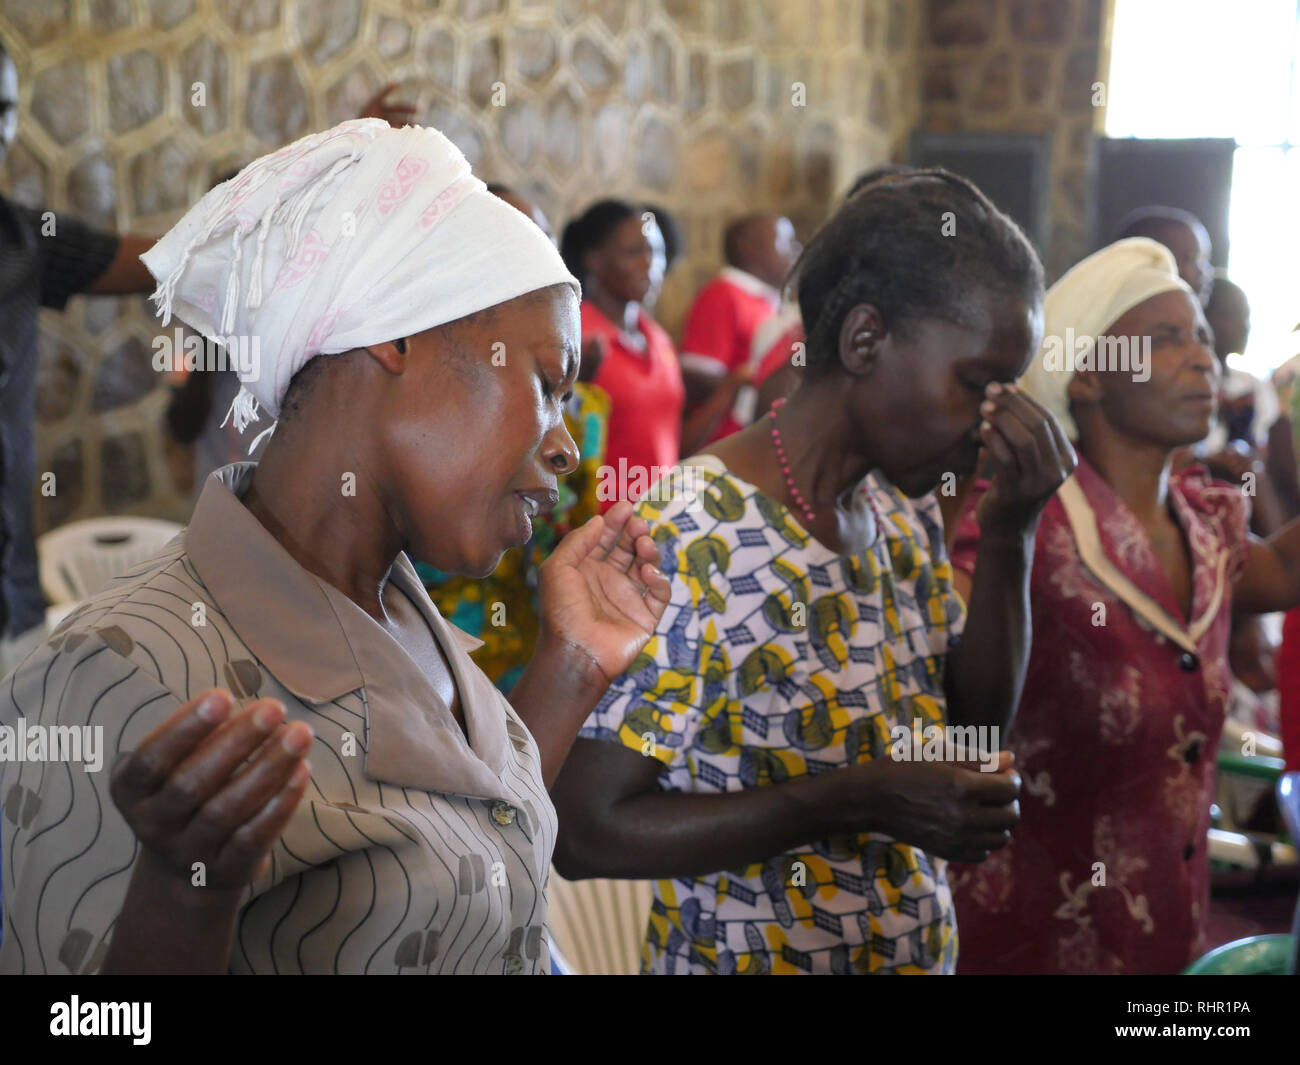 TANZANIA  -  Sean Sprague photo 2018  Charismatic mass on Transfiguration Catholic Church premises, Mabatini, Mwanza. Stock Photo